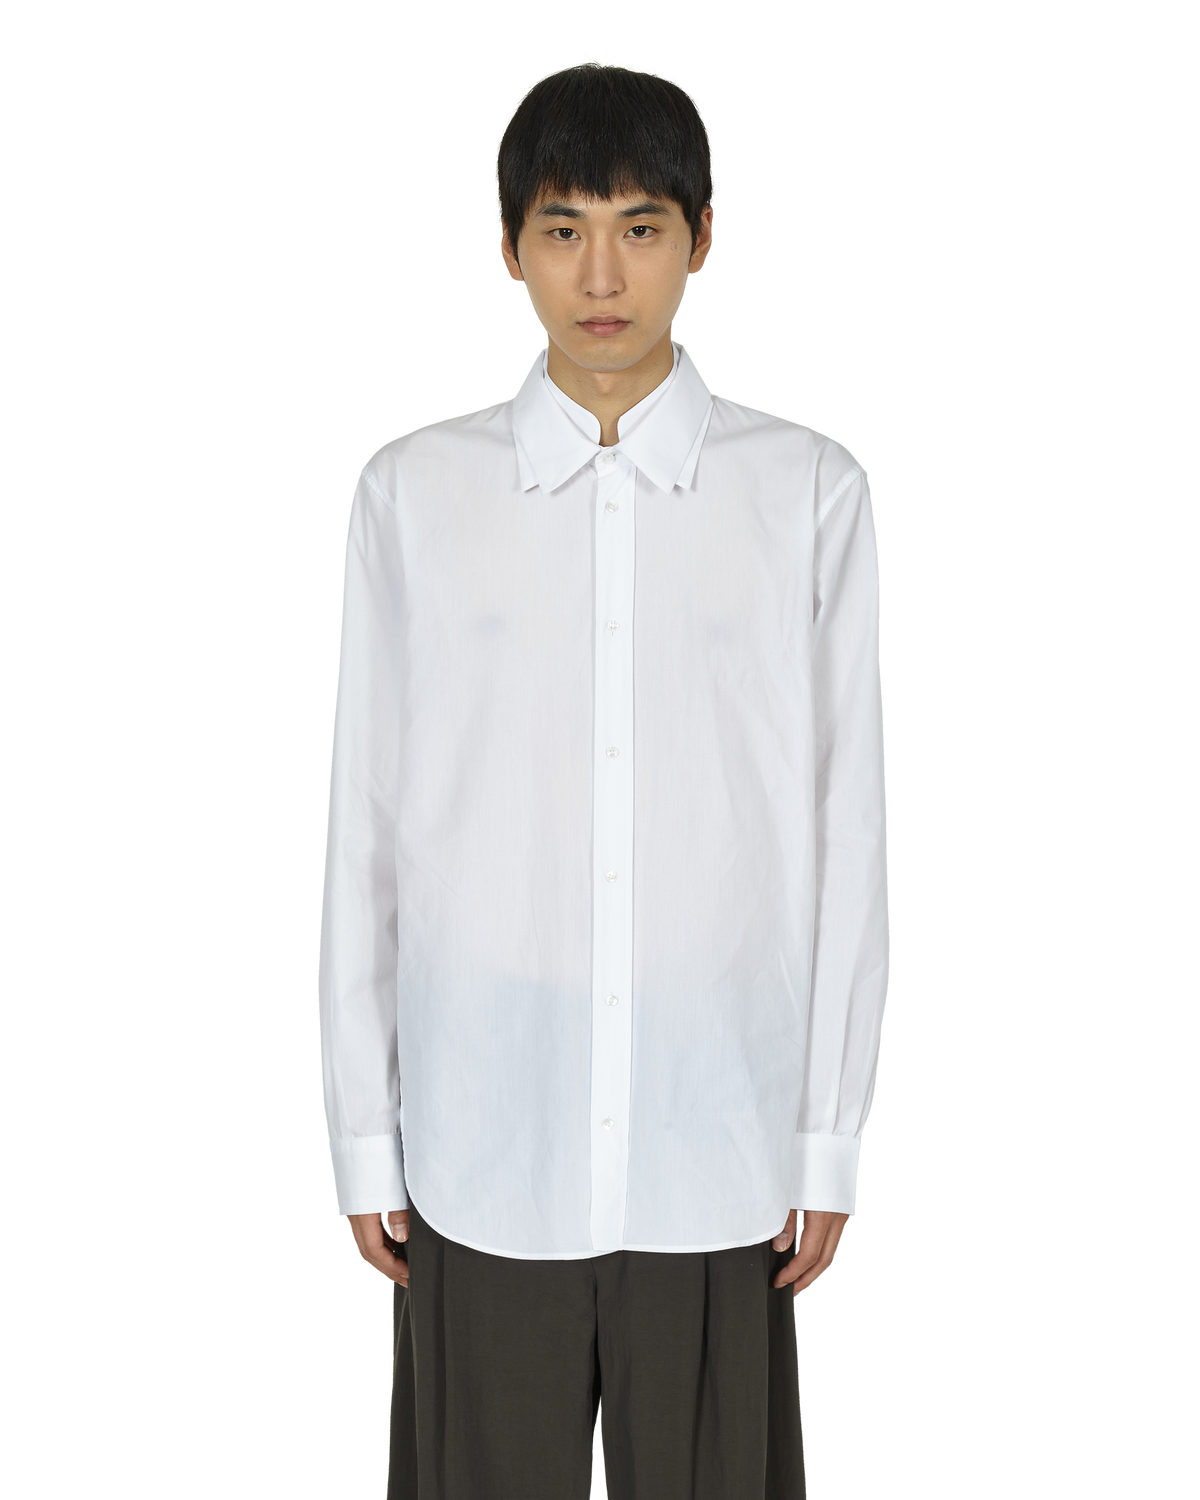 _J.L - A.L_ Triple Collar Shirt J278598-XL-White front